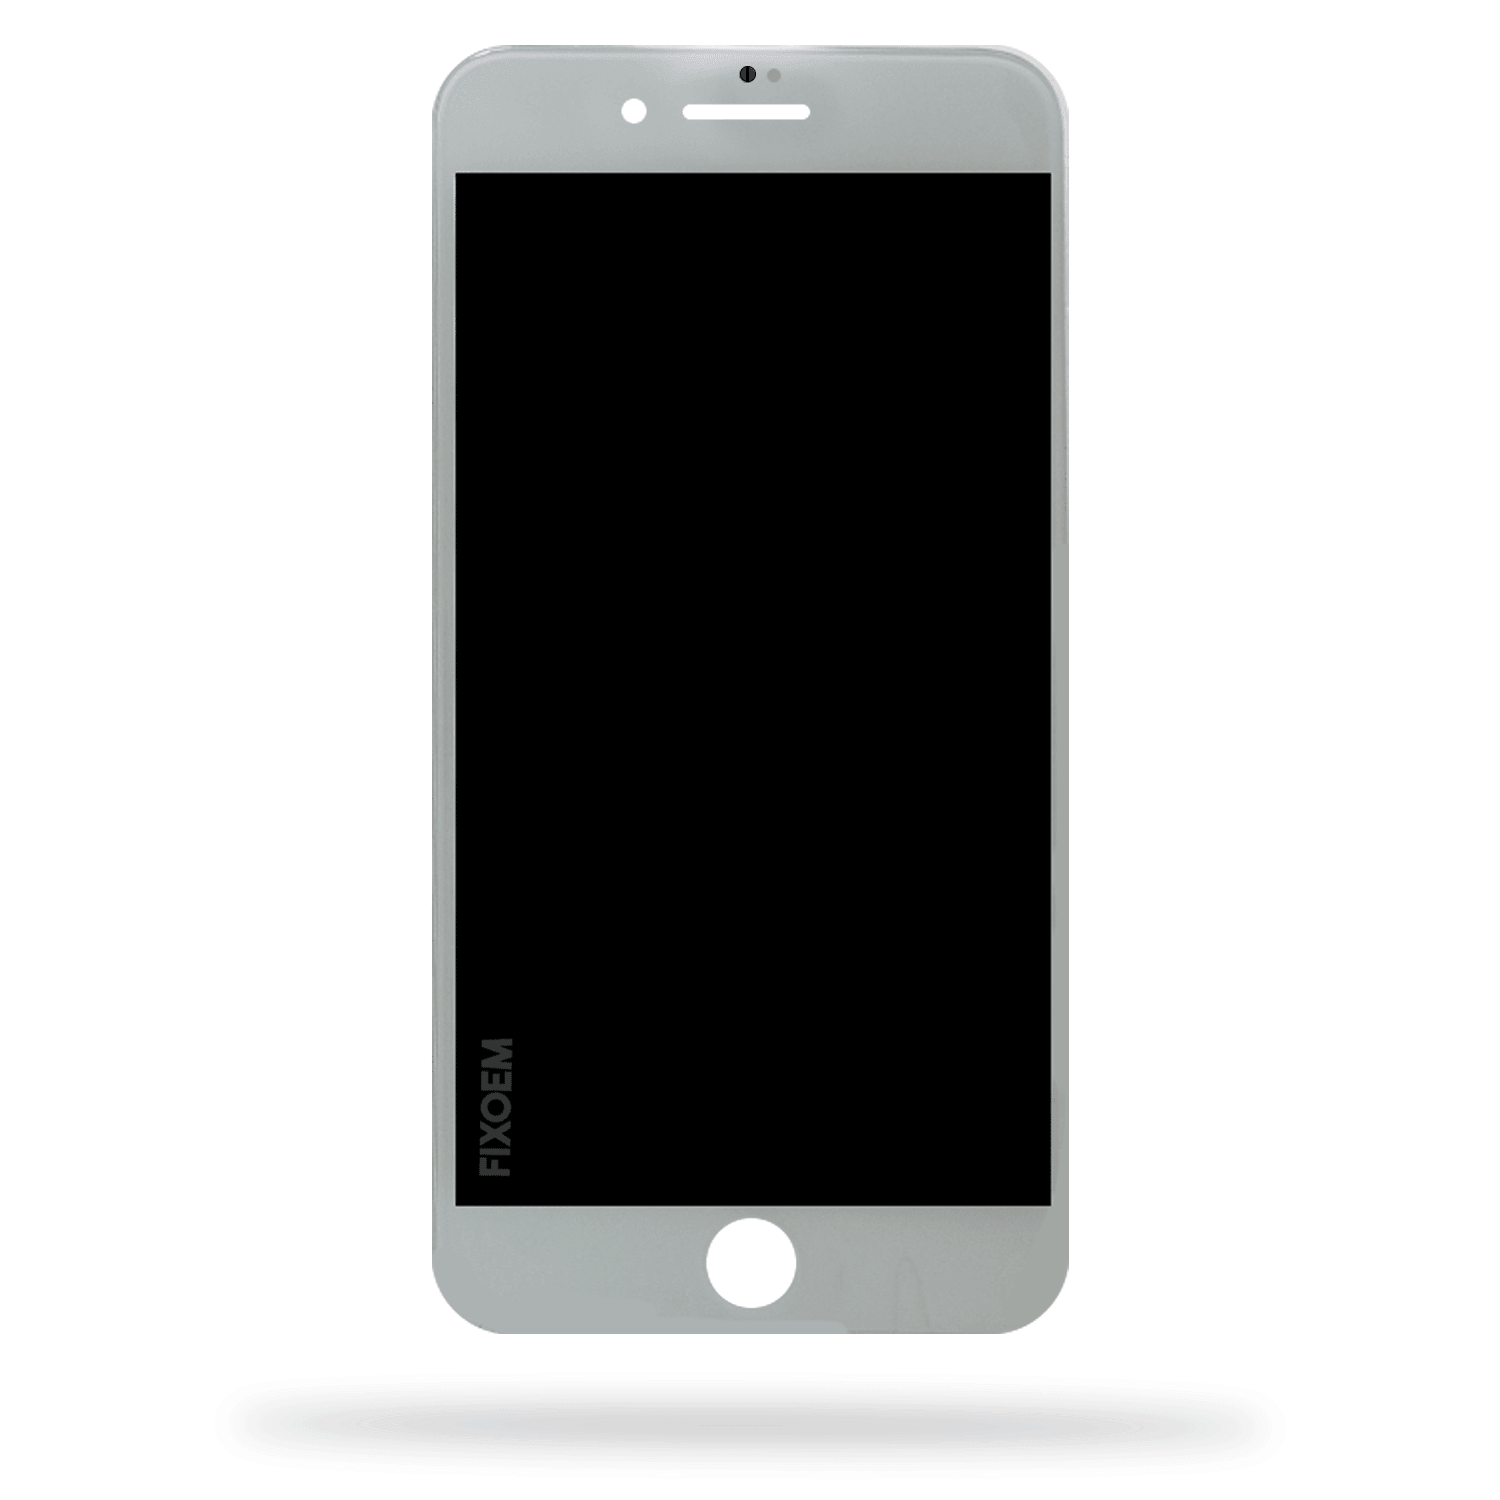 Display Iphone 8 Plus A1864. a solo $ 370.00 Refaccion y puestos celulares, refurbish y microelectronica.- FixOEM